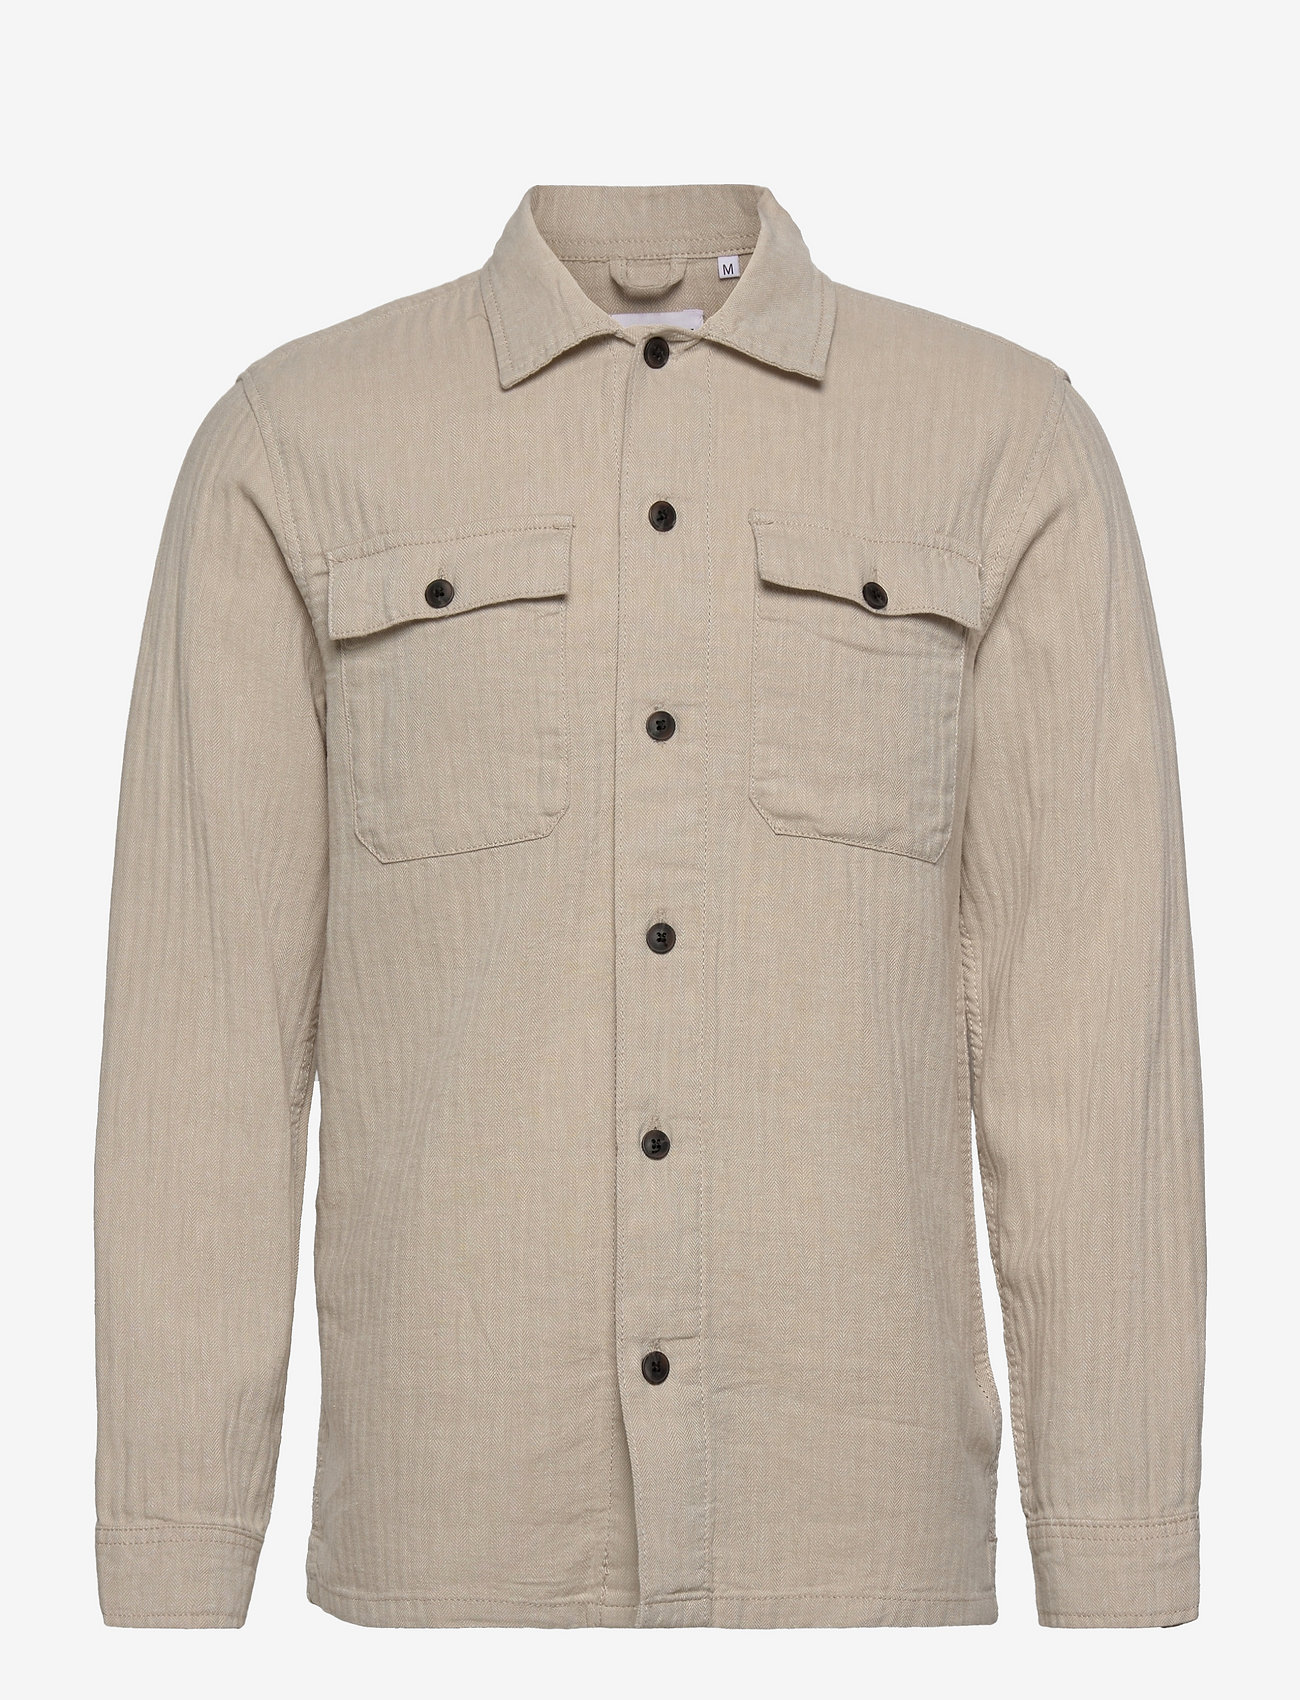 Lindbergh - Cotton linen overshirt L/S - heren - lt stone - 0